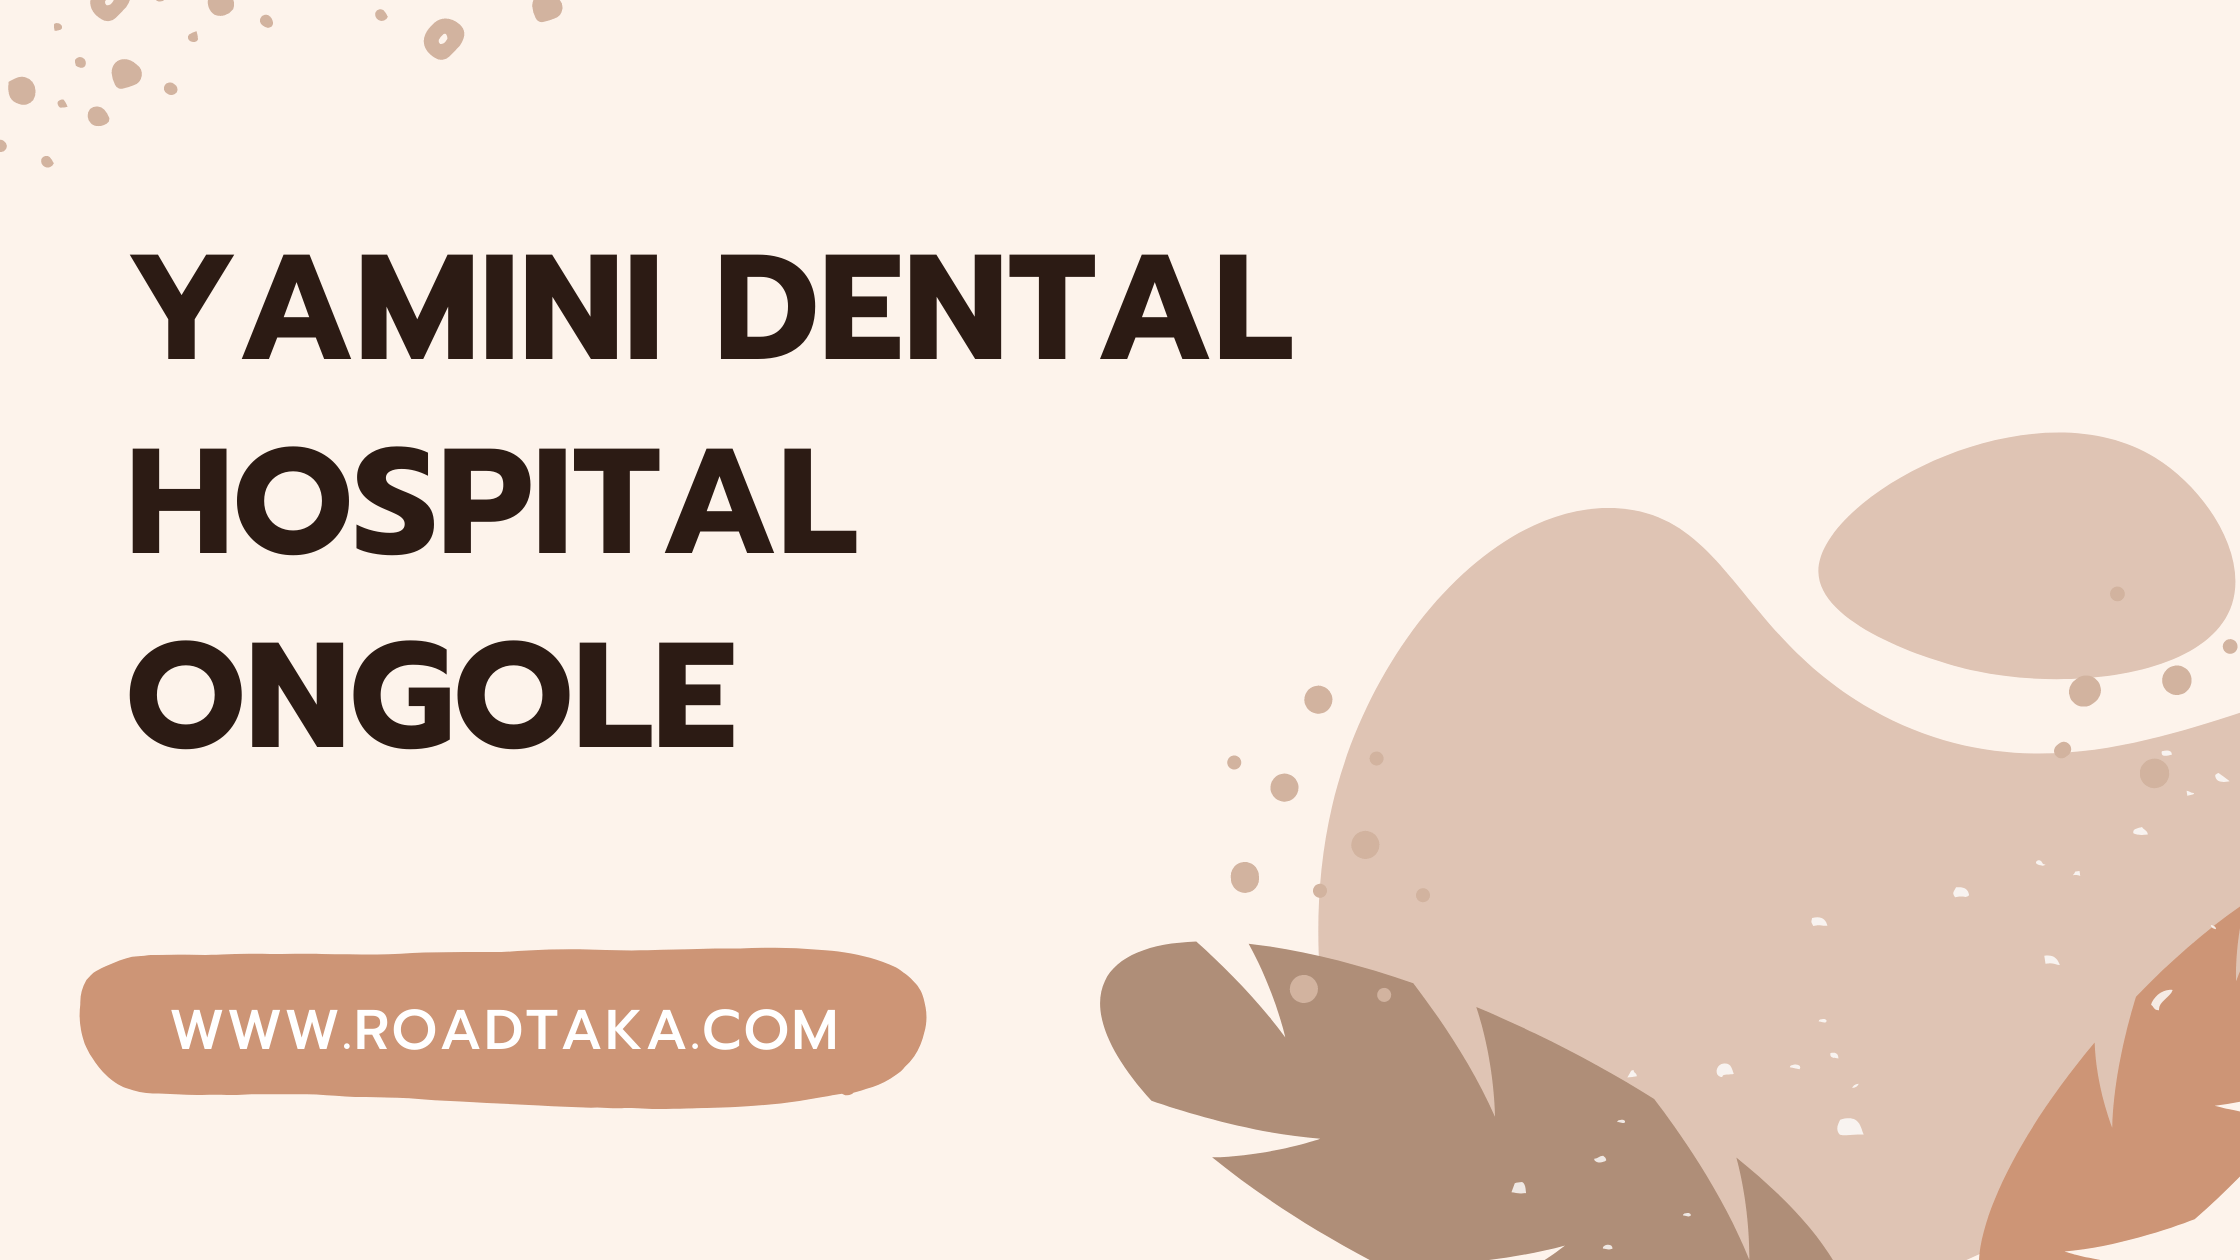 Yamini Dental hospital Ongole